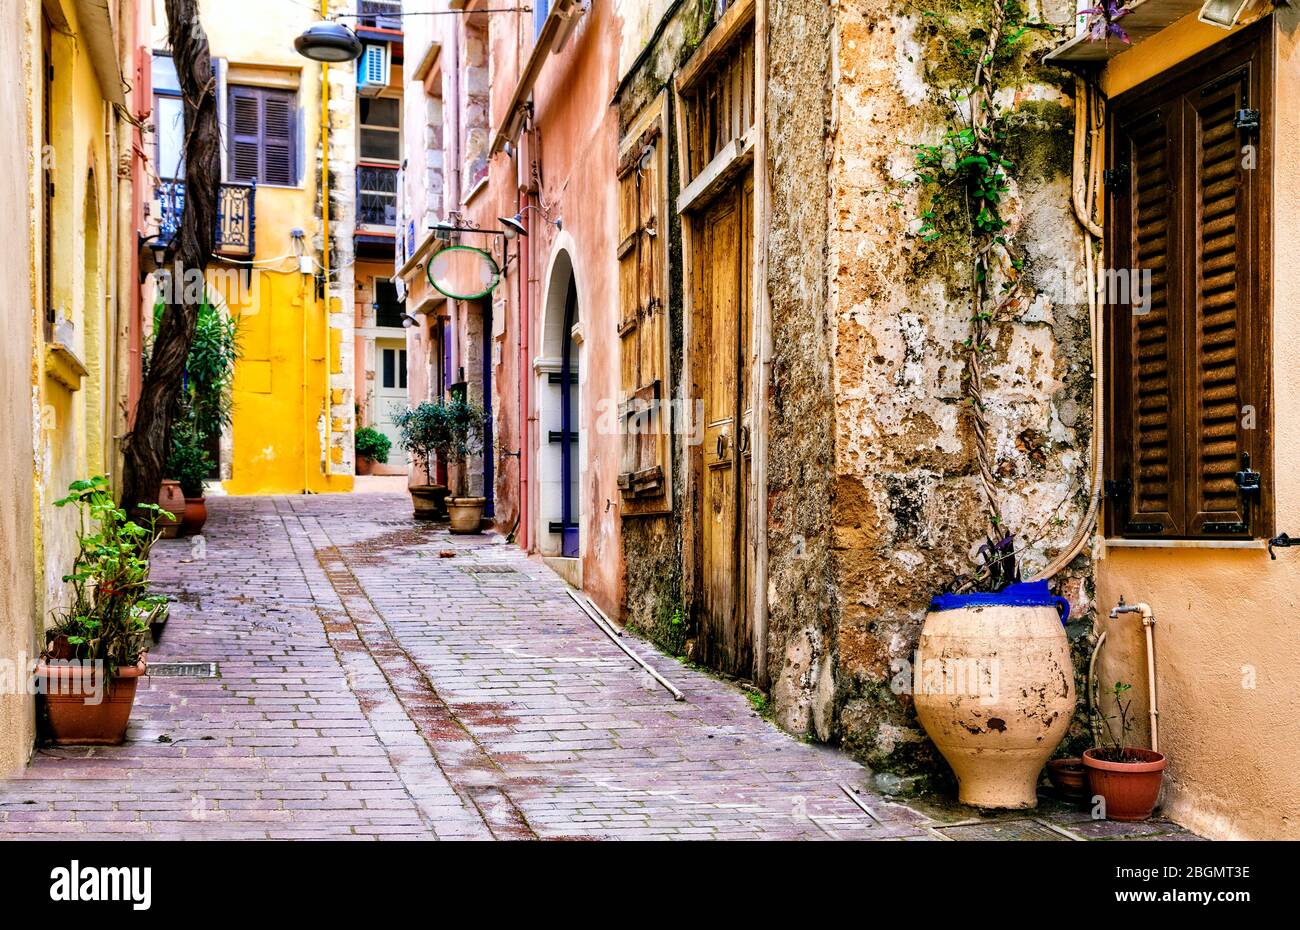 Colorata serie tradizionale greca - strade strette nella città vecchia di Chania, l'isola di Creta. Foto Stock